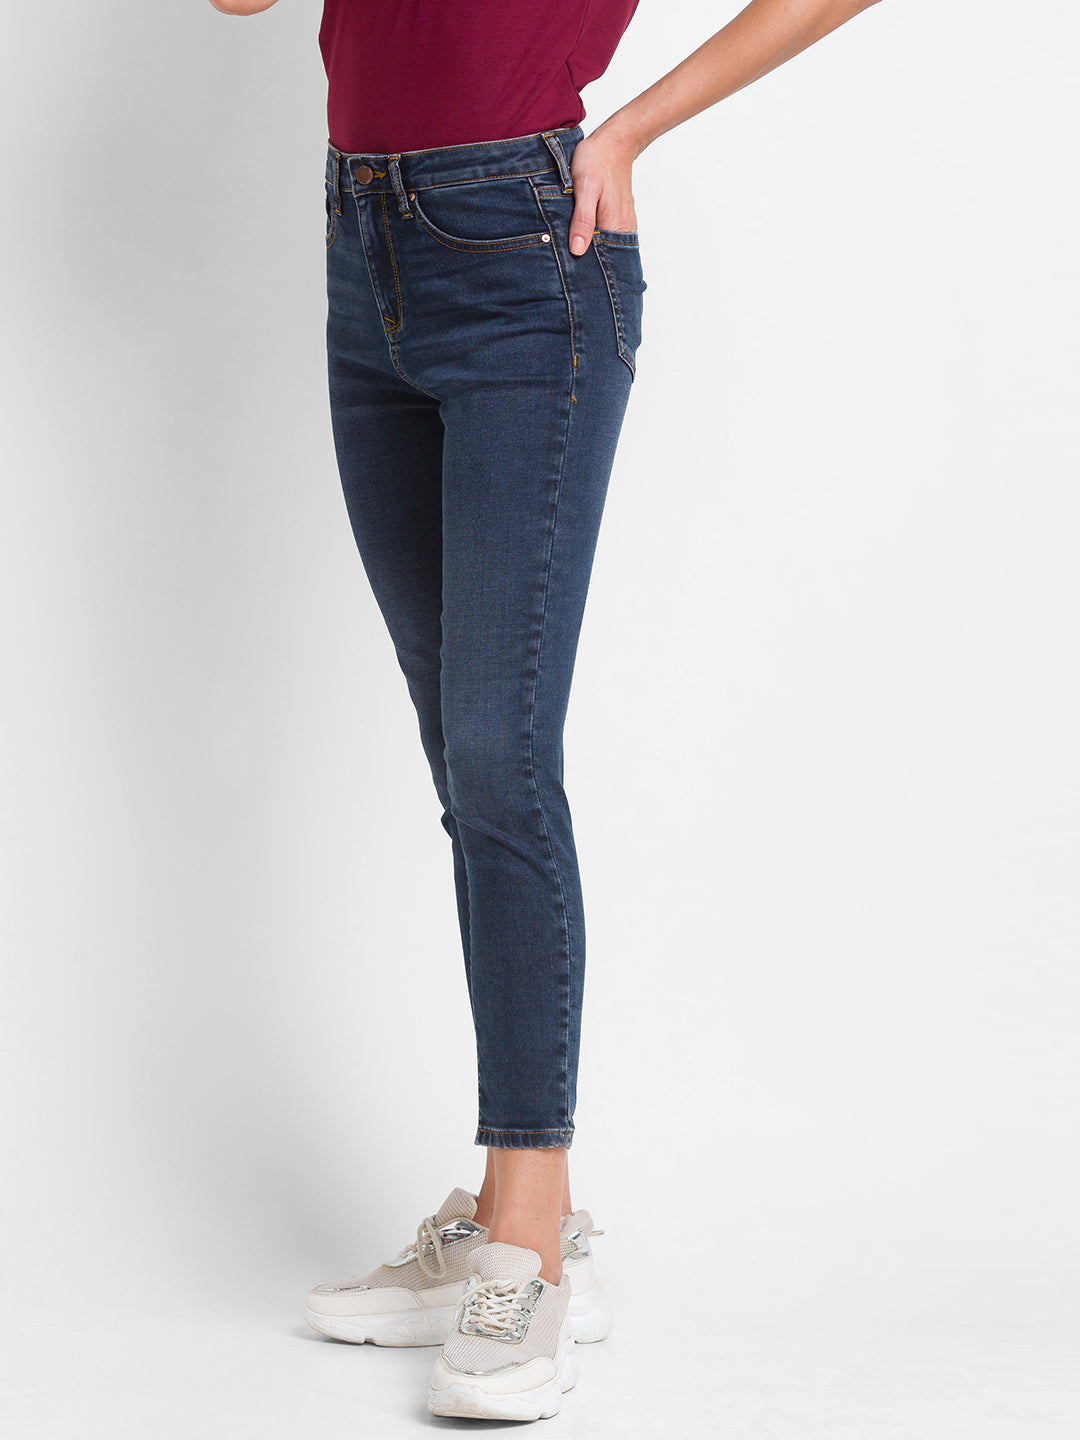 Spykar Dark Blue Lycra Super Skinny Ankle Length Jeans For Women (Alexa)